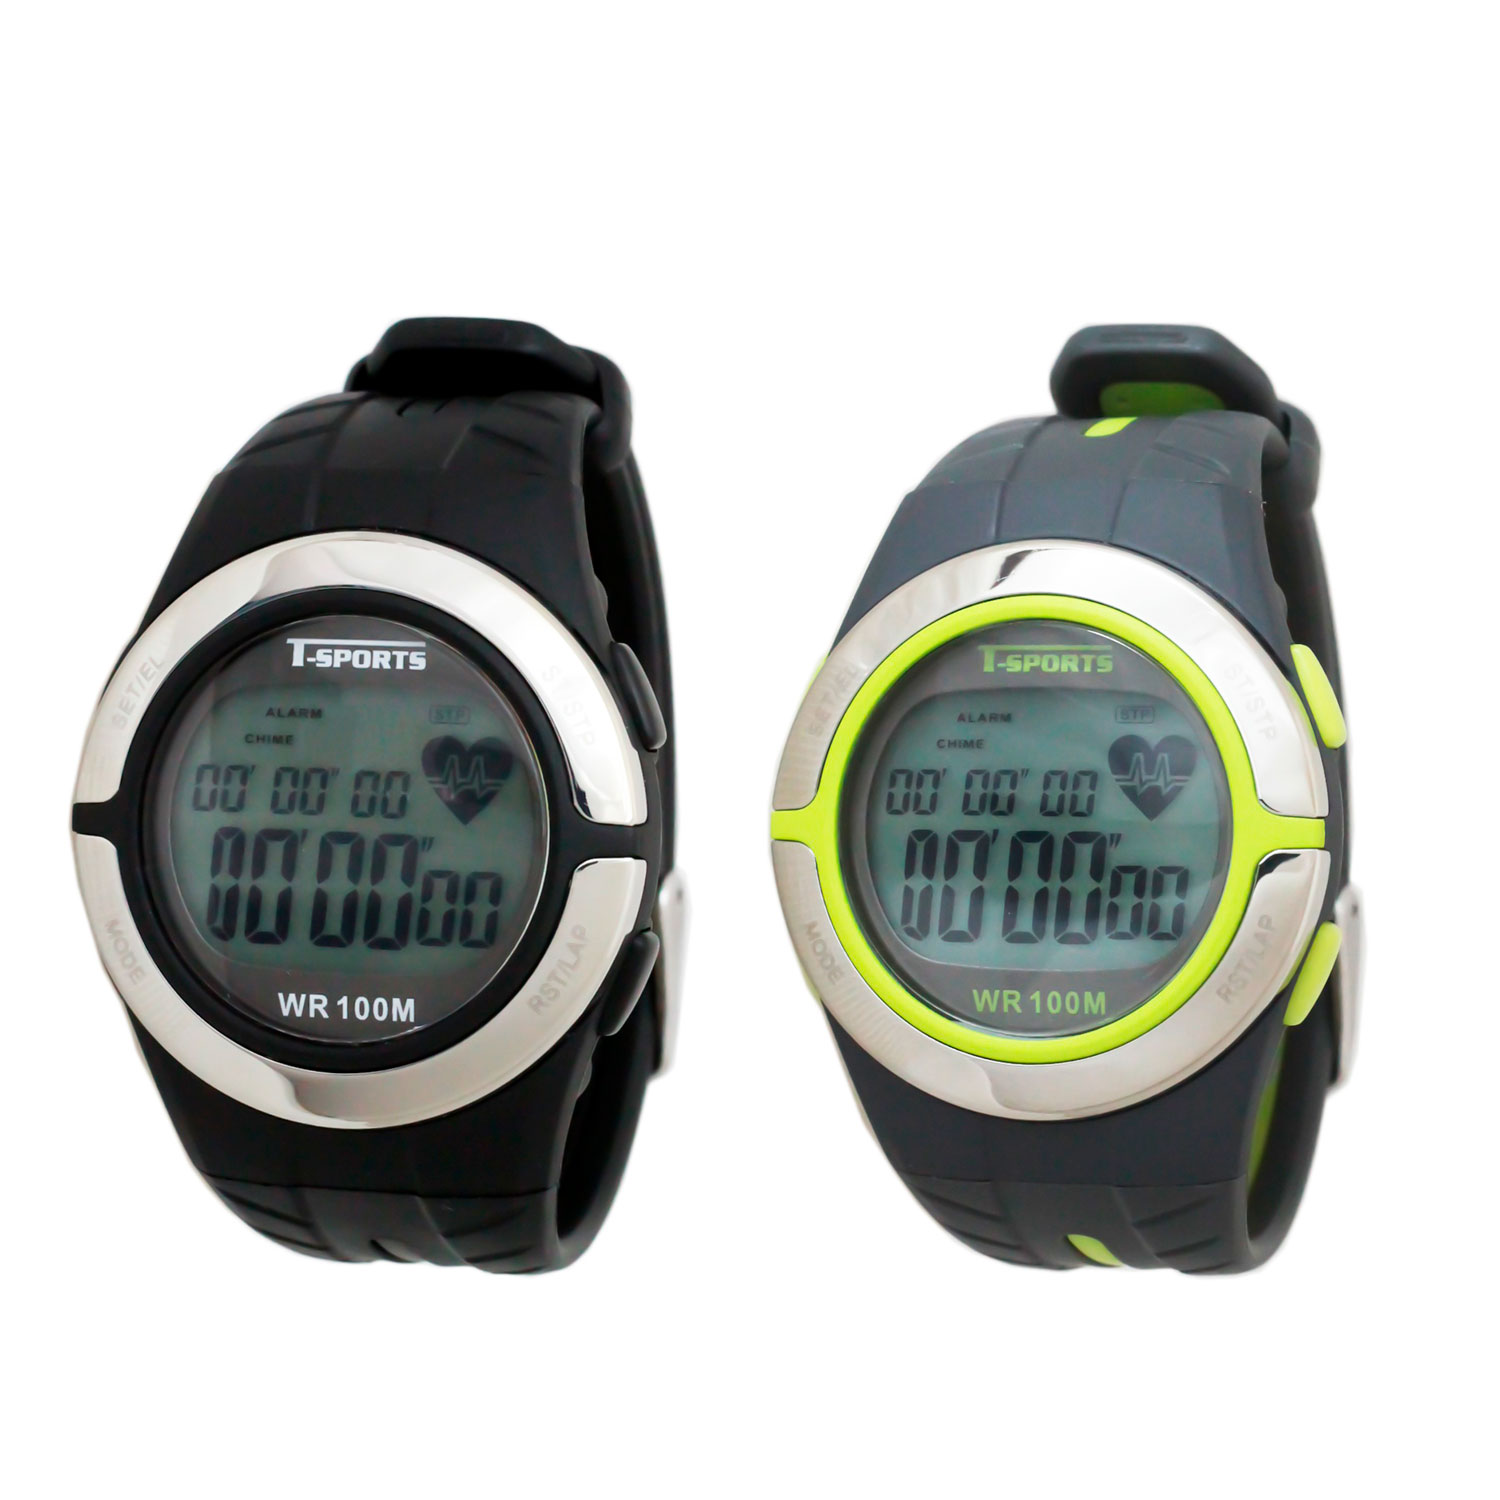 T-SPORTS ティースポーツ デジタルウオッチ 心拍計測 腕時計 メンズ レディース【TS-D028】